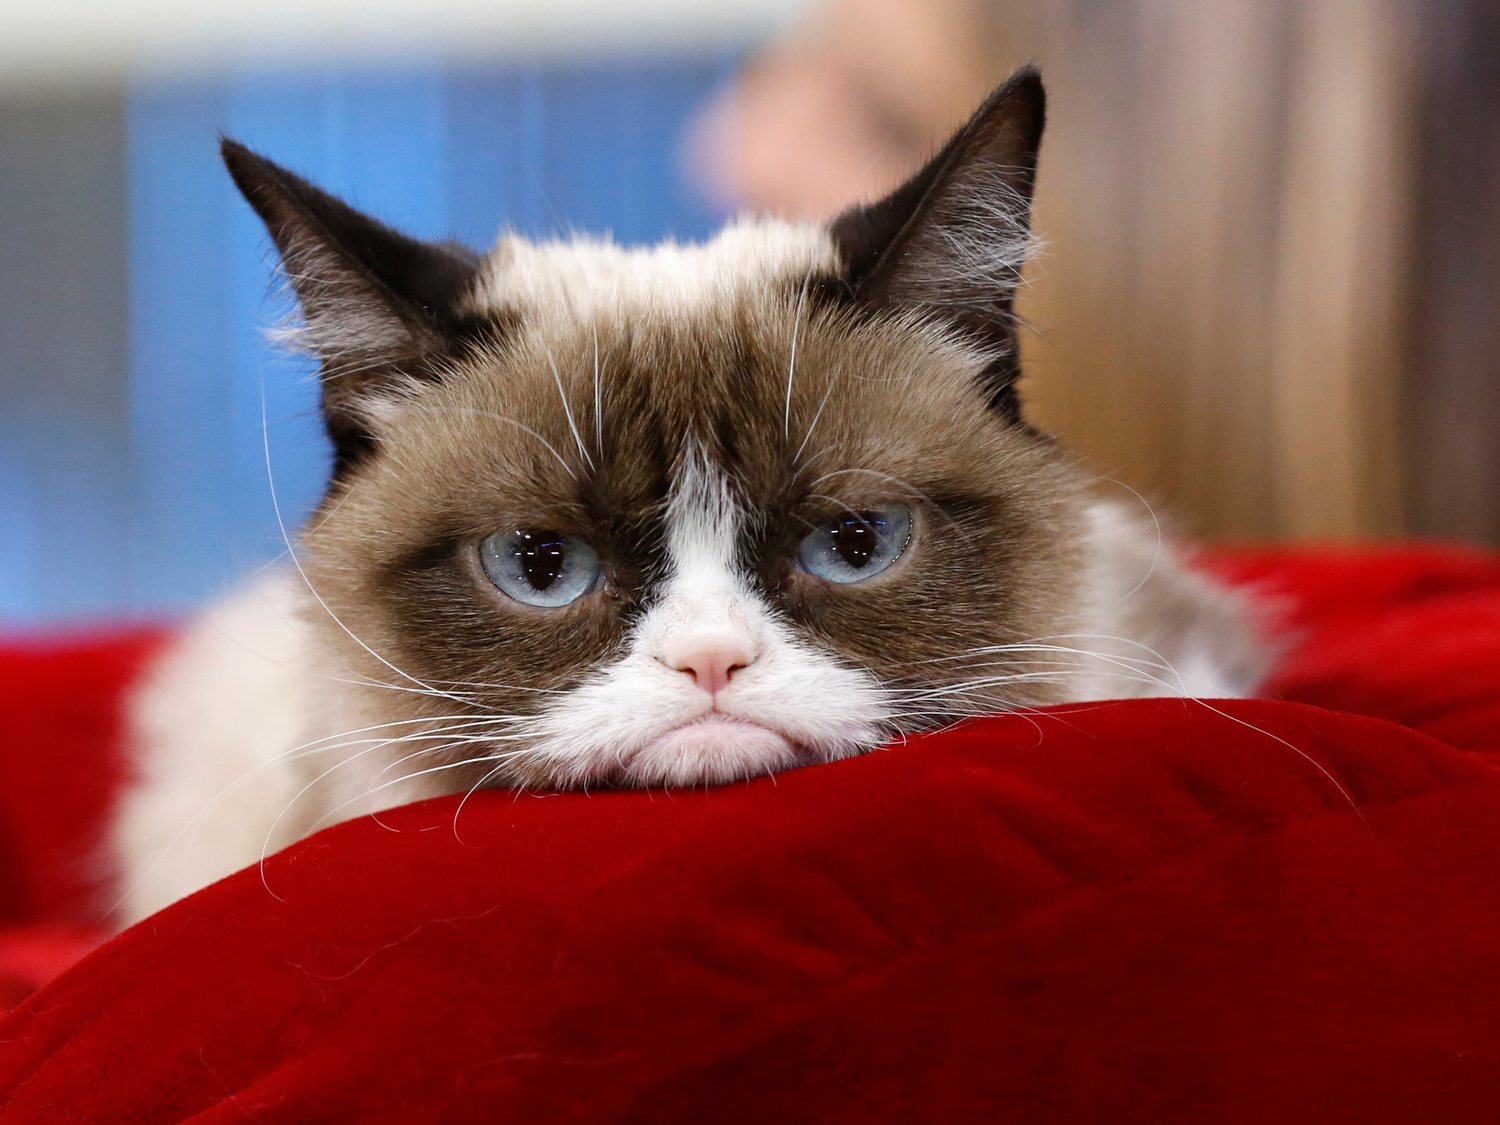 Muere Grumpy Cat, la gata más famosa de Internet